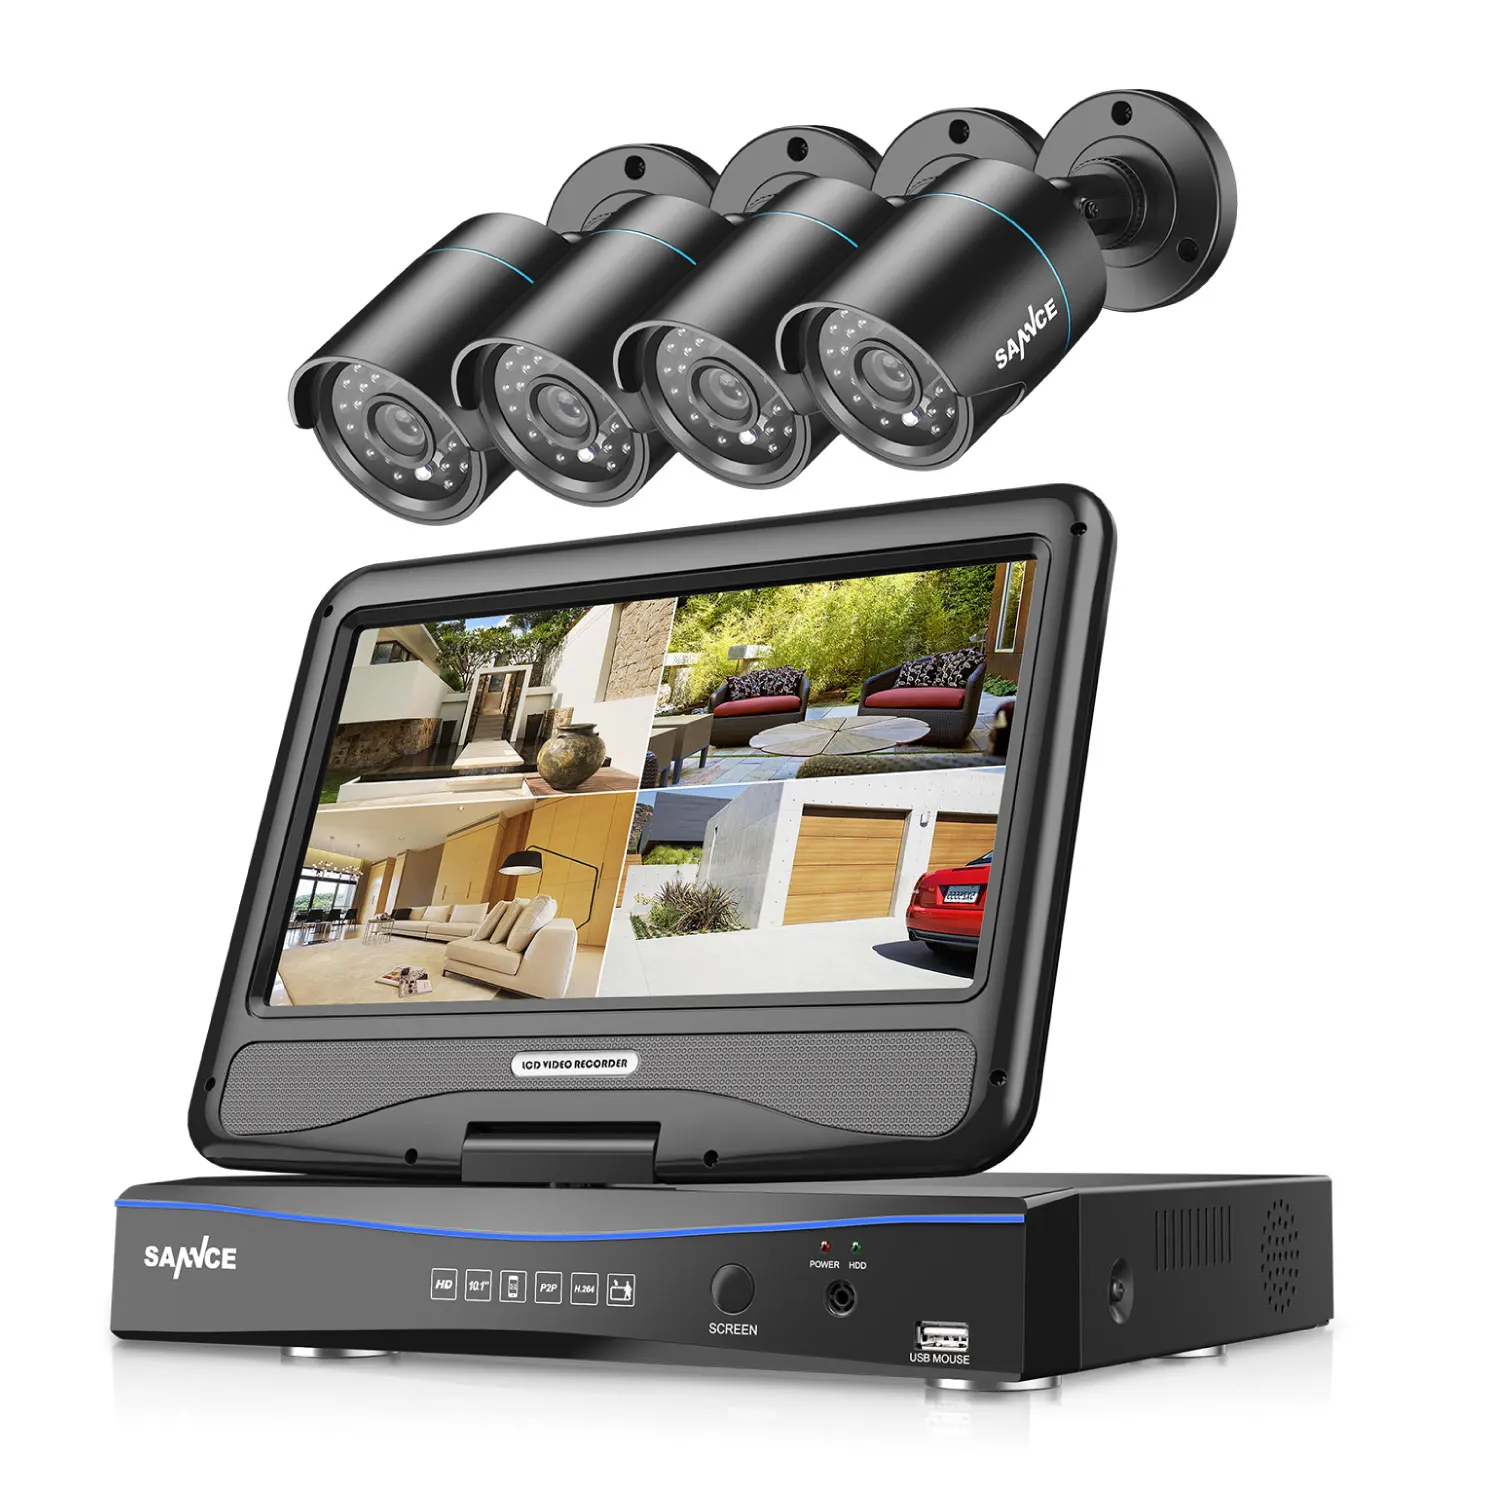 SANNCE 8CH 8-канальный сетевой видеорегистратор 10,1 дюймов дисплей 1080N охранного видеонаблюдения Системы жесткий диск и 4 шт. 1MP всепогодный пуля камеры